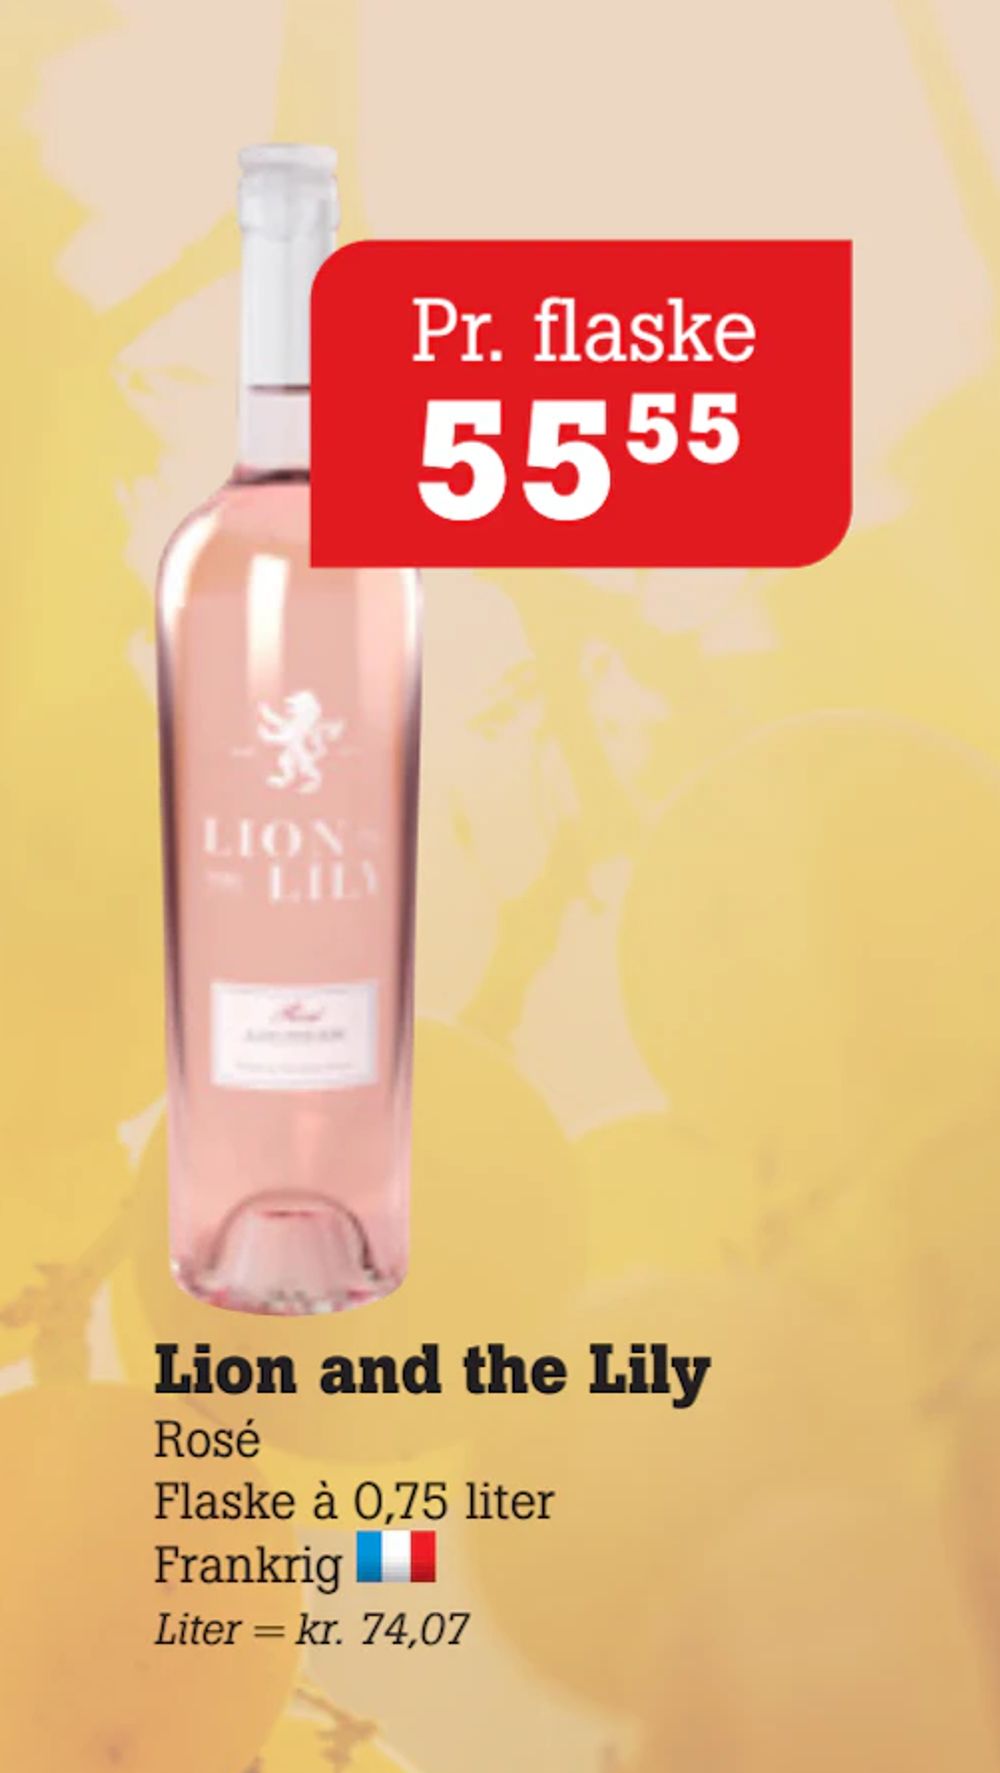 Tilbud på Lion and the Lily fra Poetzsch Padborg til 55,55 kr.